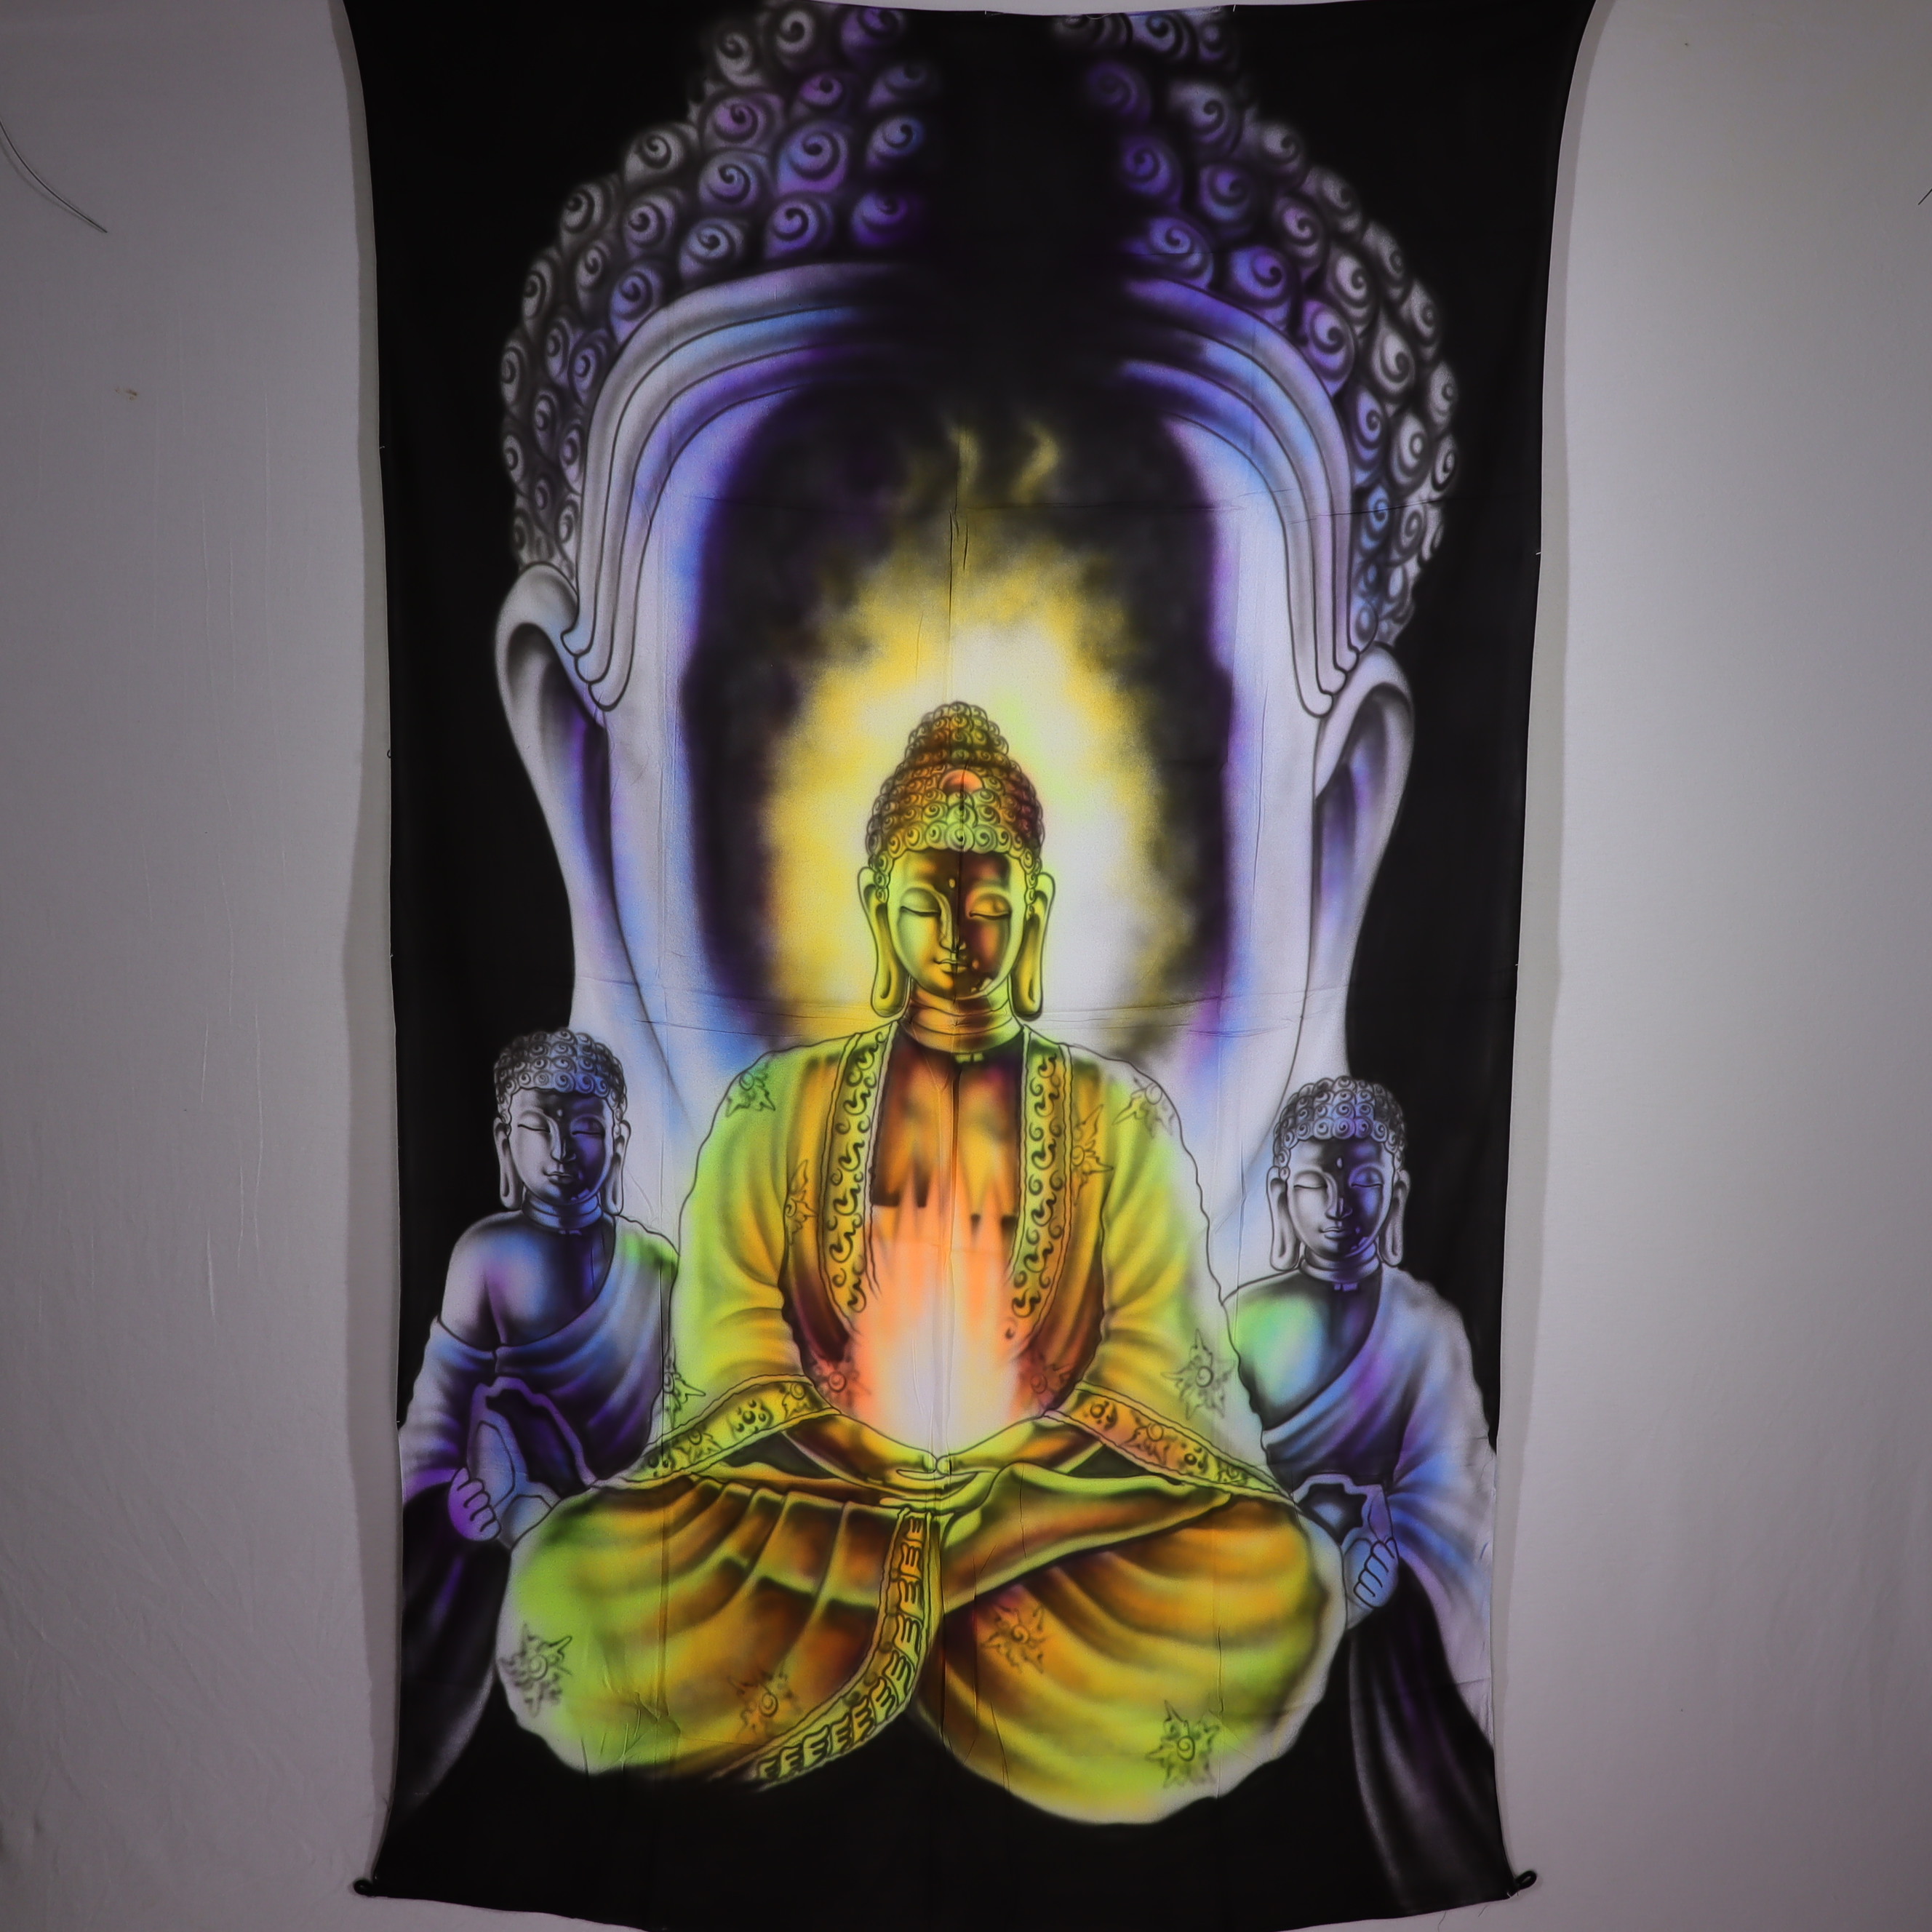 Wandtuch L 120x190 - Buddha der Erleuchtung - aufwendig handgemaltes Schwarzlicht-Tuch - mehrfarbig & UV-aktiv